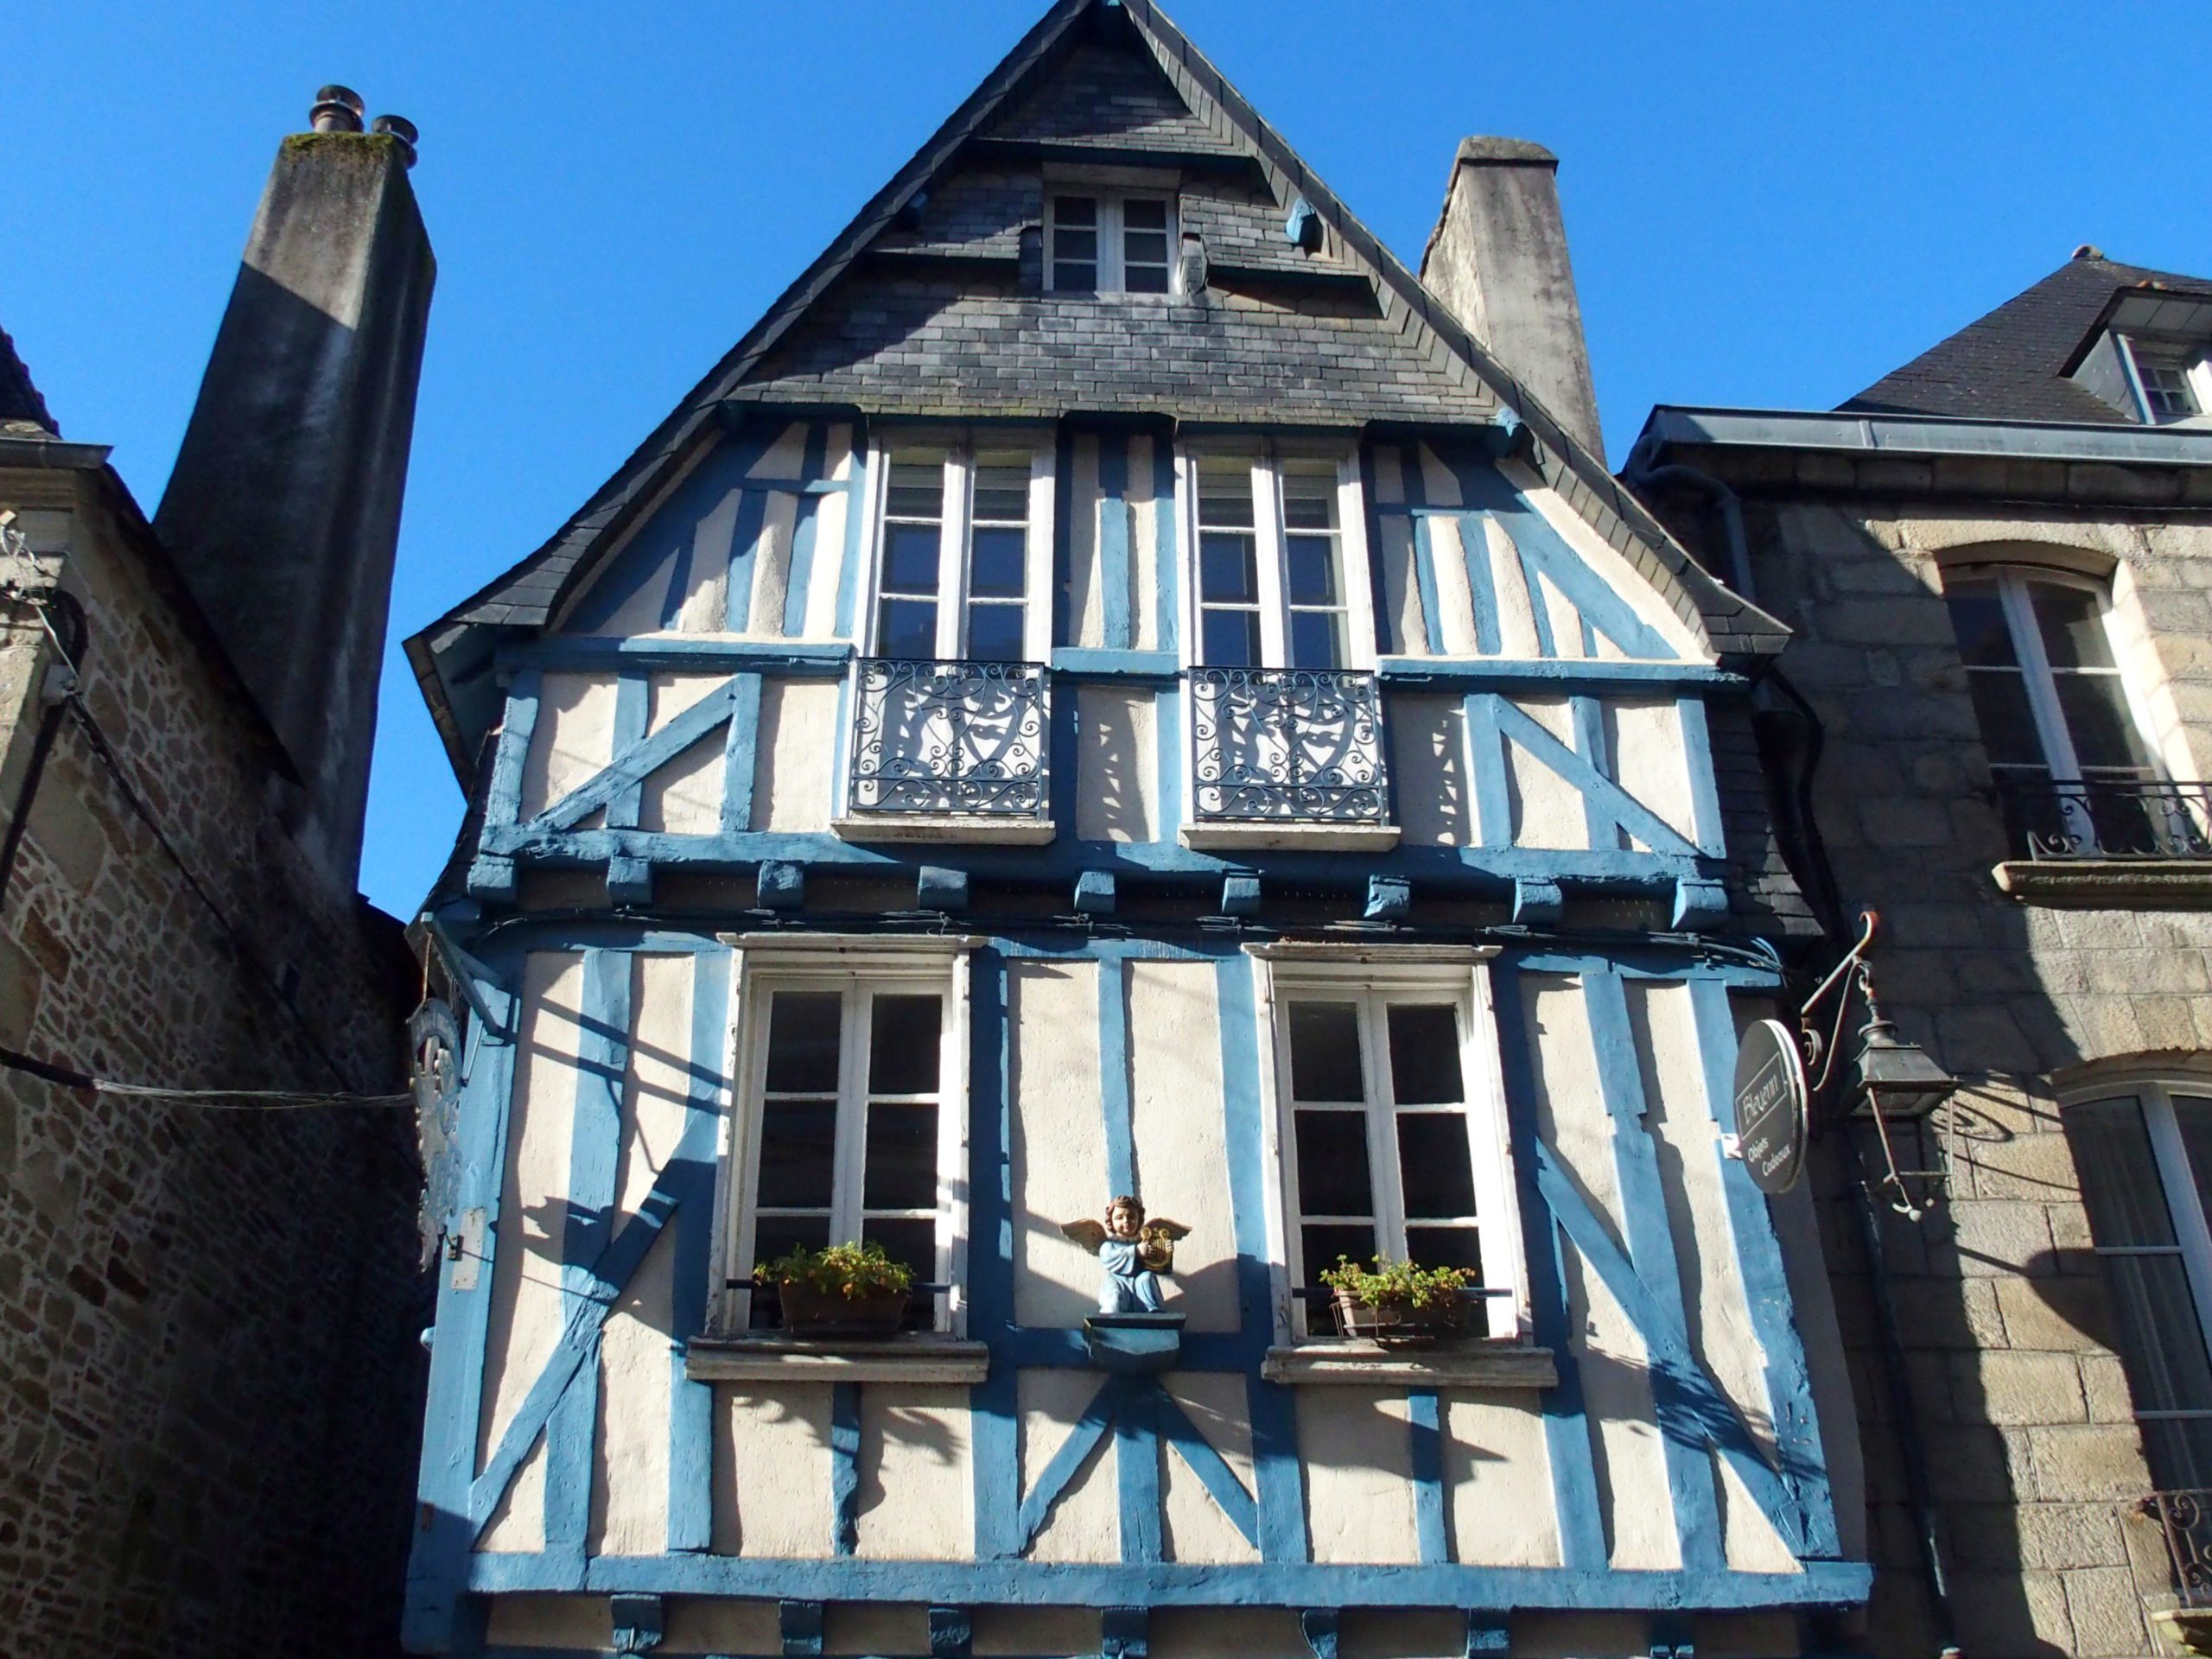 Maison à colombage bleus Quimper Bretagne.